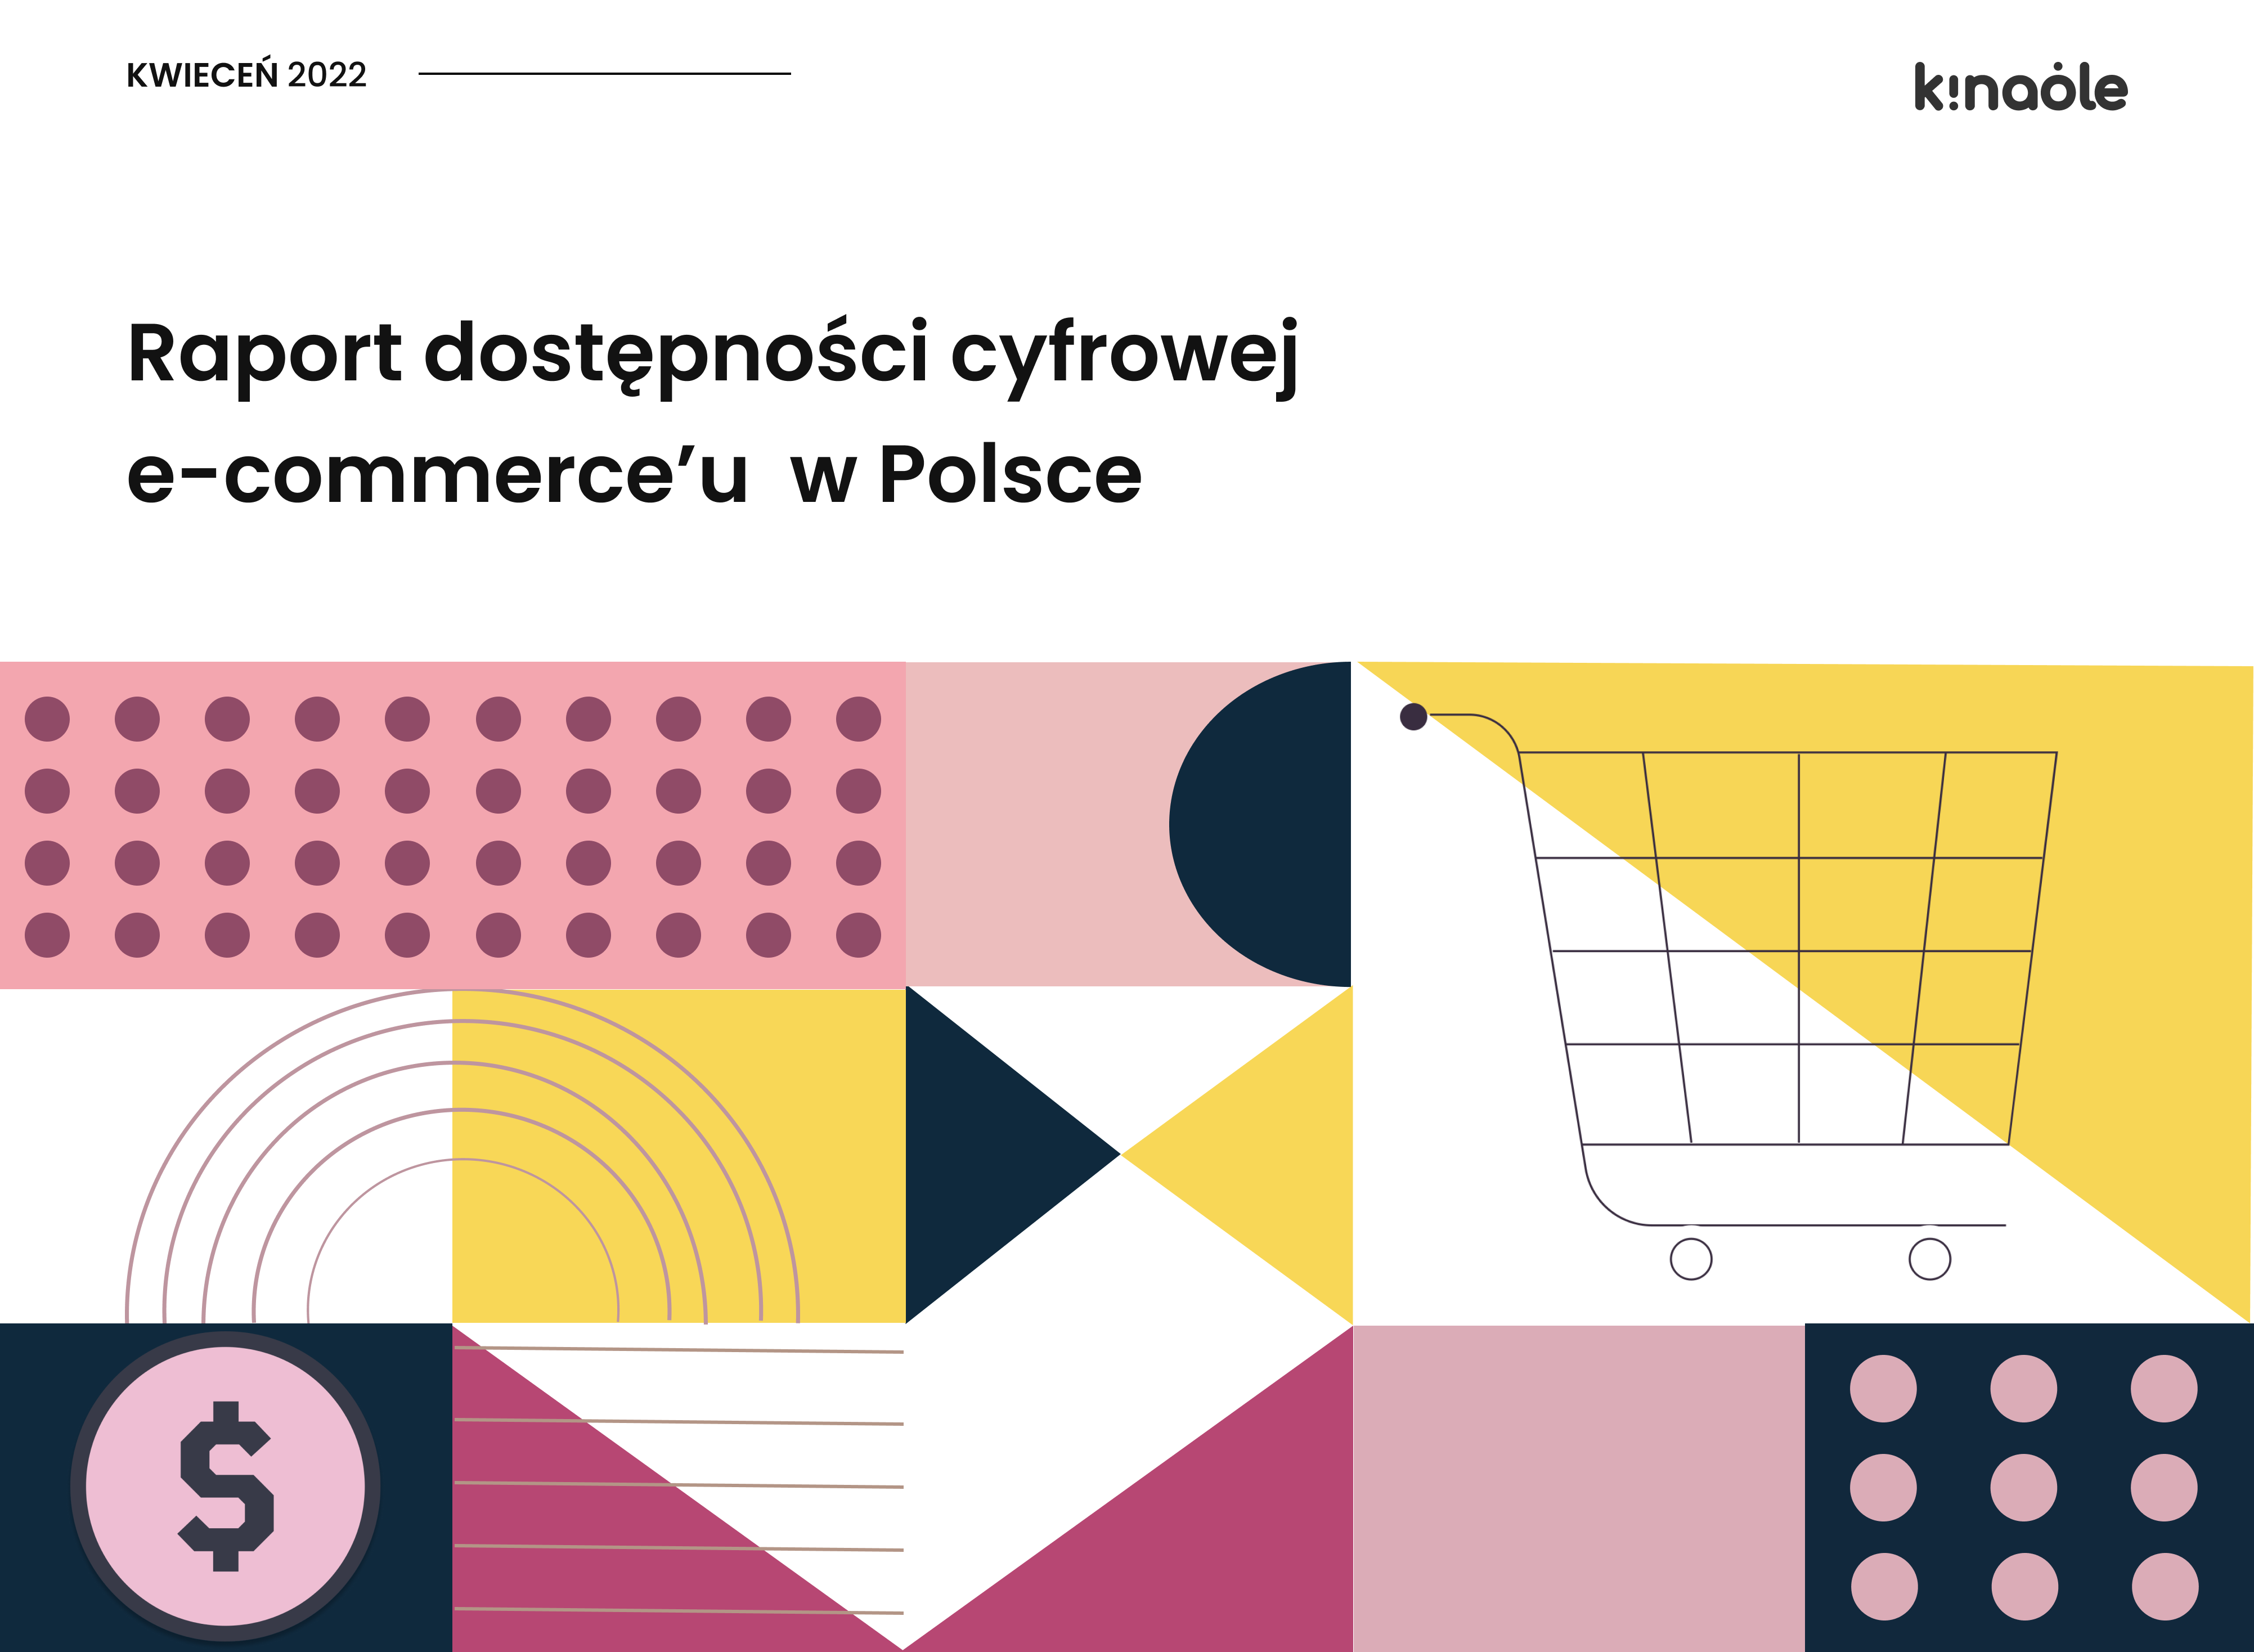 Raport dostdostępności cyfrowej e-commerce-u w Polsce